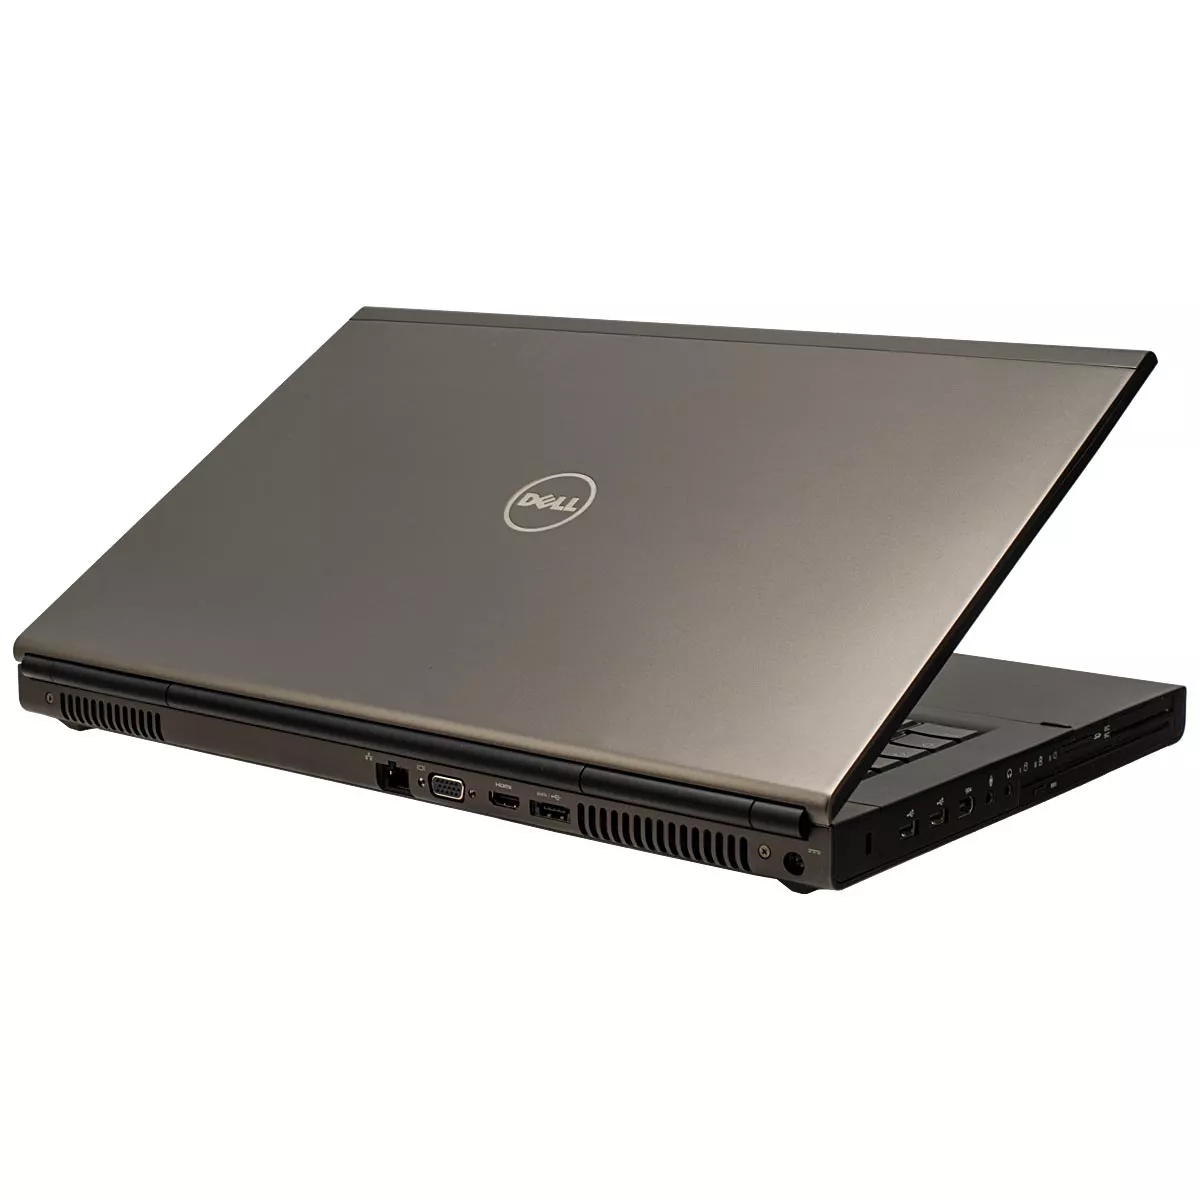 Dell Precision M6700 Core i7 3740QM nVidia Quadro K3000M Full-HD 240 GB SSD Webcam A+